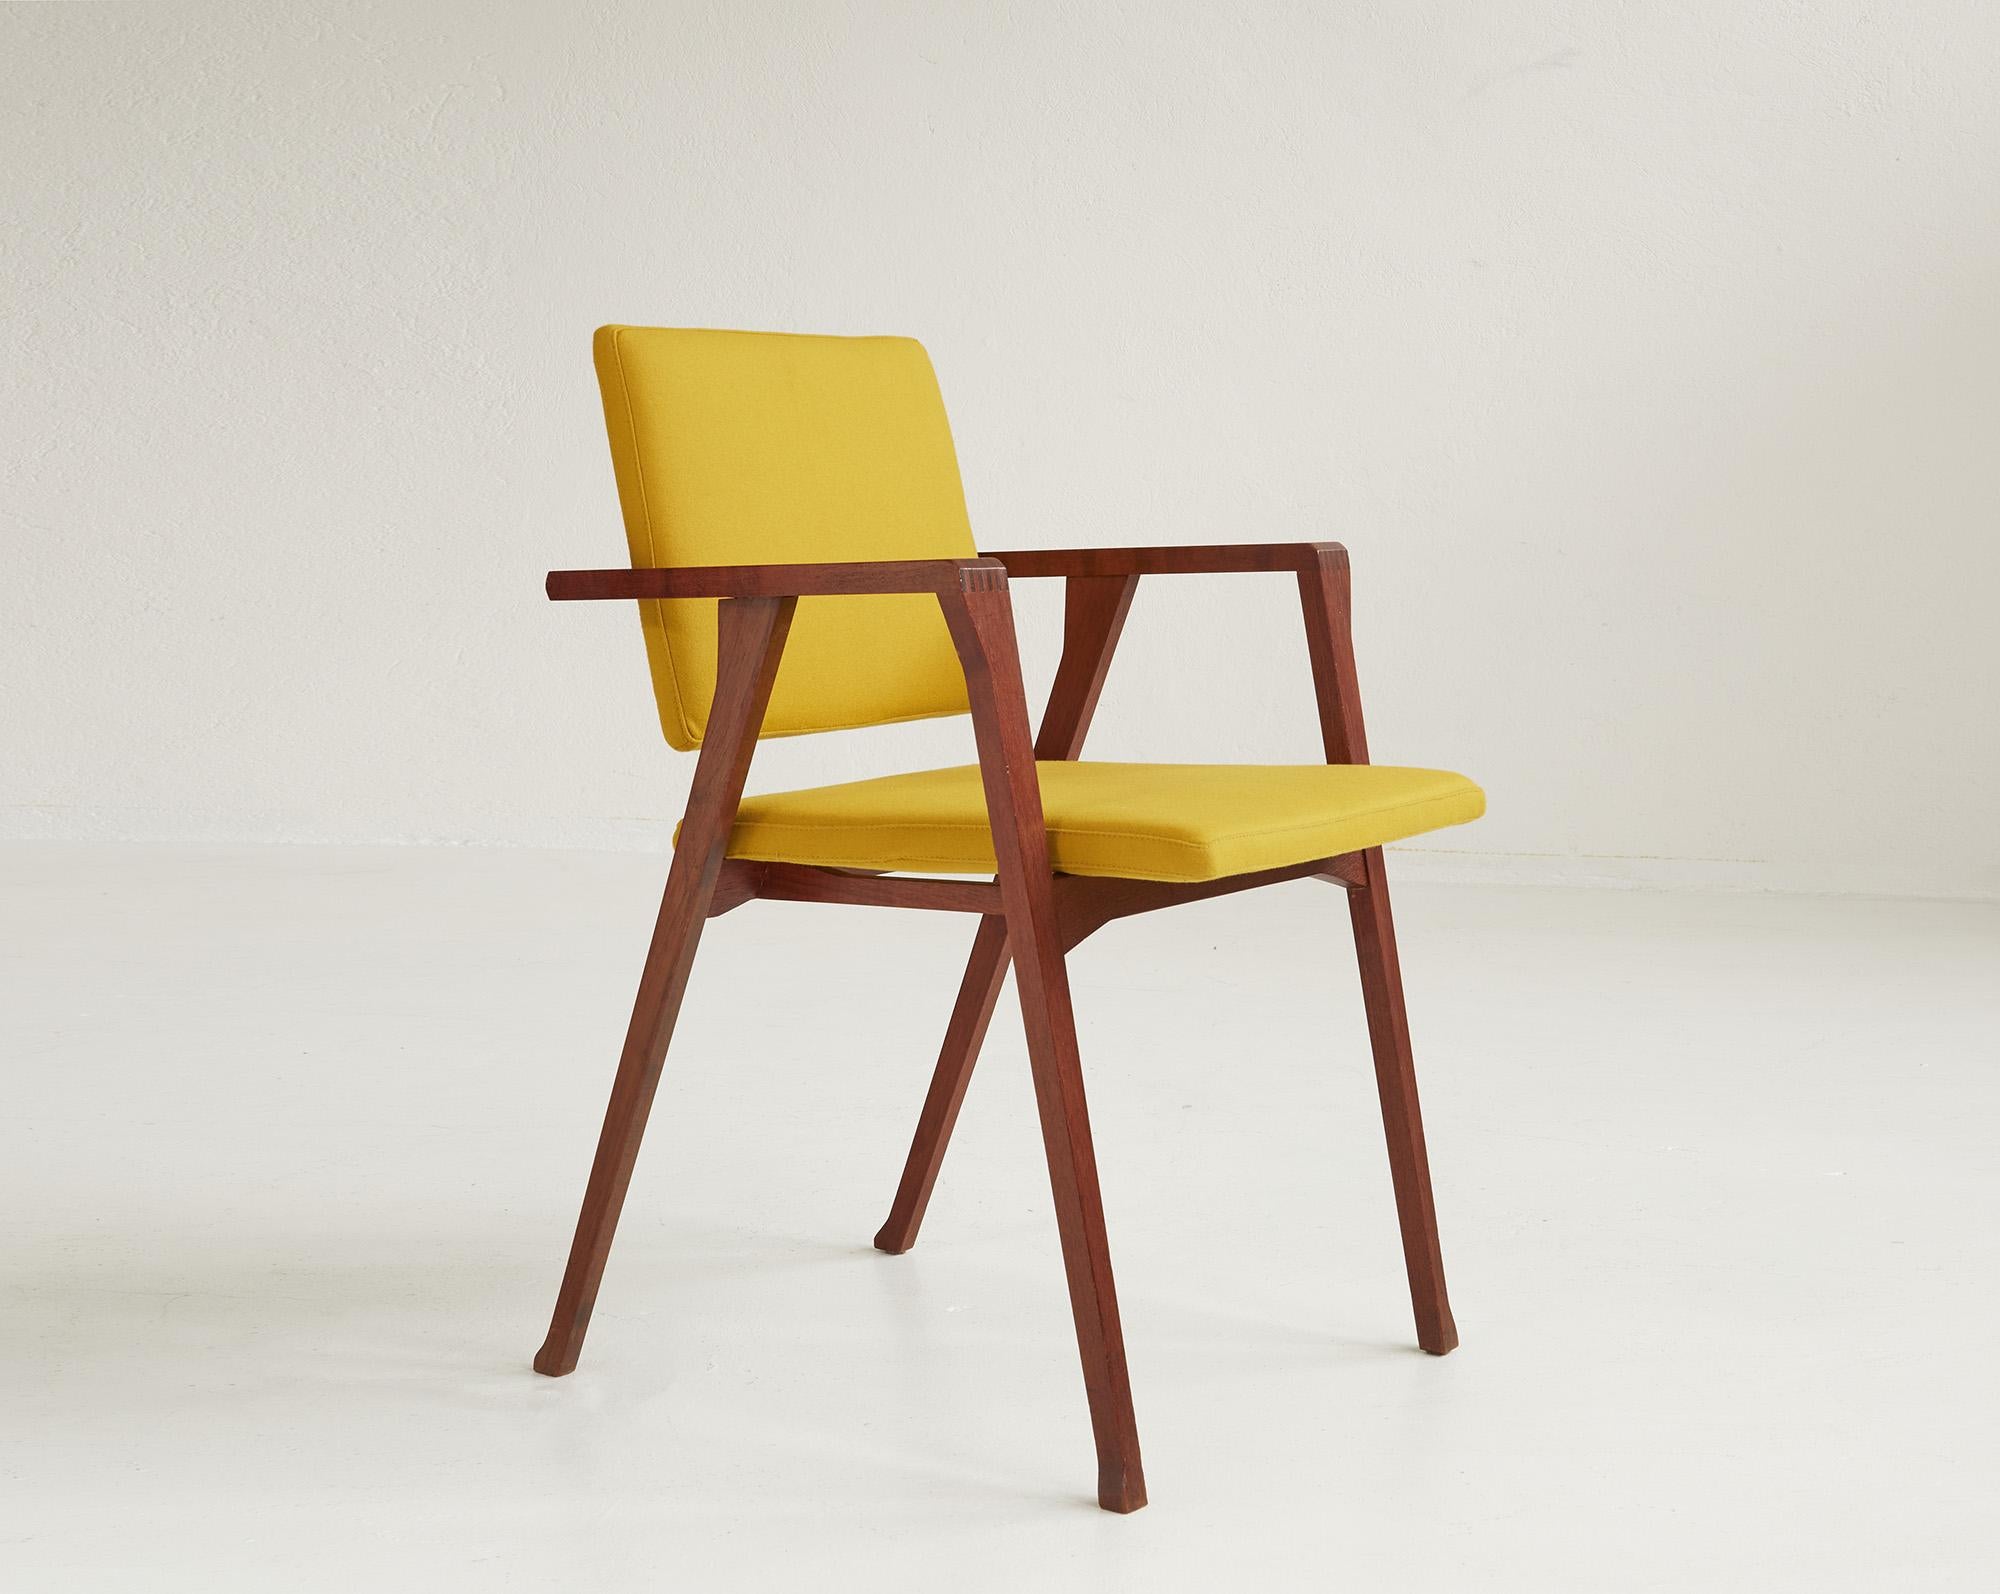 Paire de chaises Luisa en teck de Franco Albini pour Poggi, Italie 1955

Ces chaises de salle à manger intemporelles et minimalistes avec accoudoirs sont dotées d'une structure en bois de teck aux détails et à la qualité d'exécution remarquables.